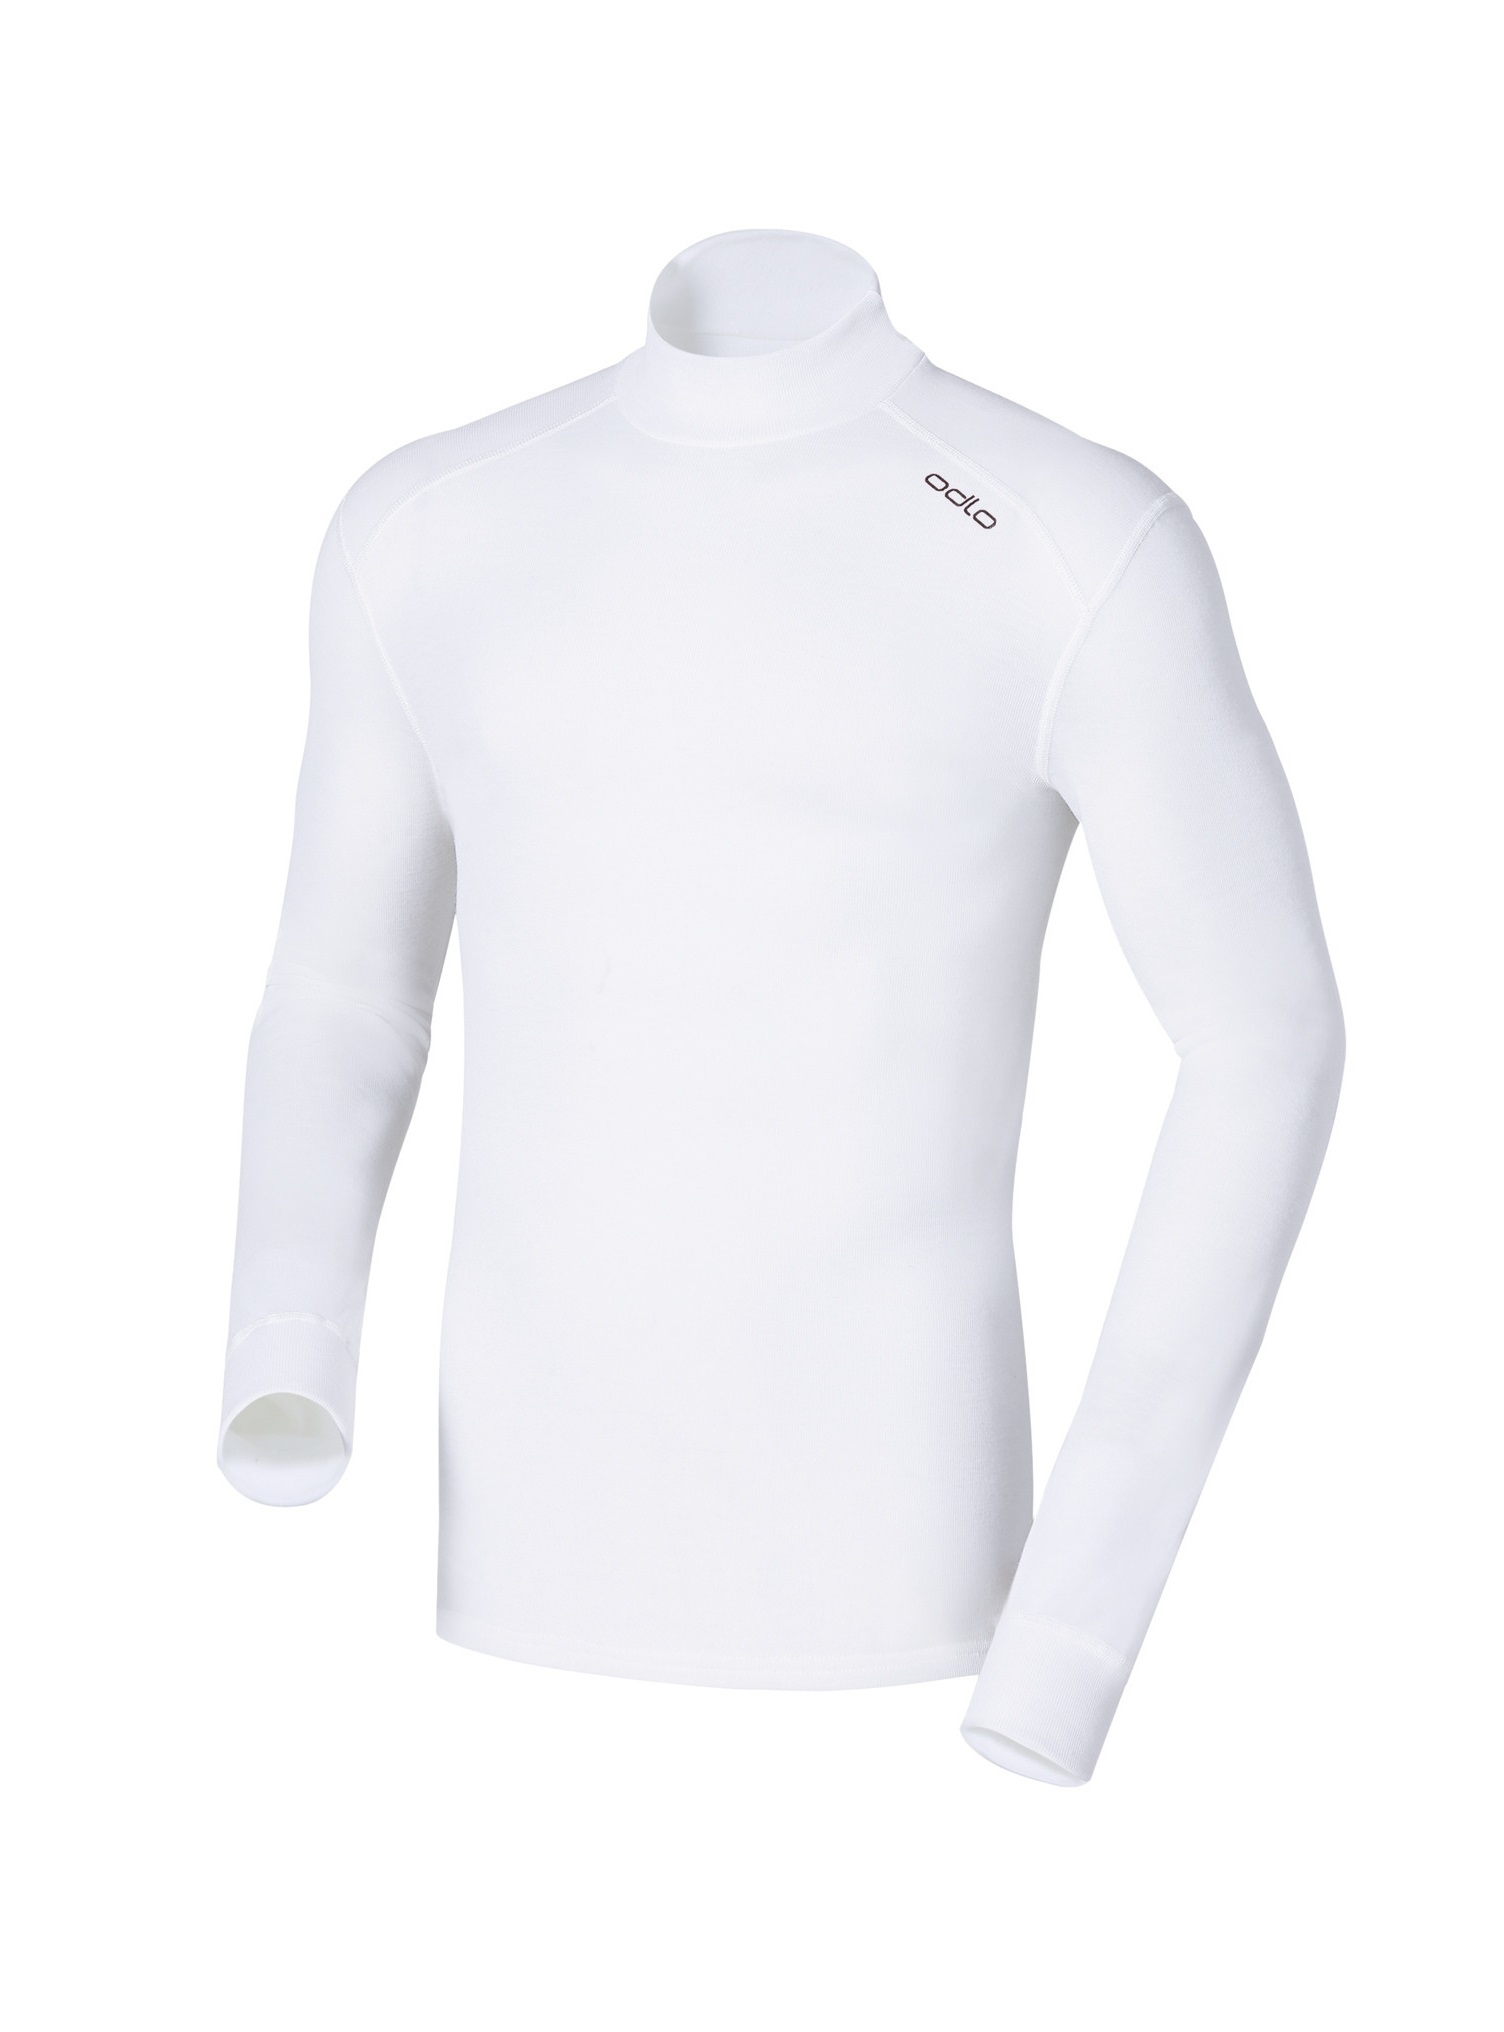 Мужское термобелье рубашка с воротником-стойкой Odlo L/S Turtle Neck Warm  152012-10000 купить в Интернет-магазин Five-sport.ru